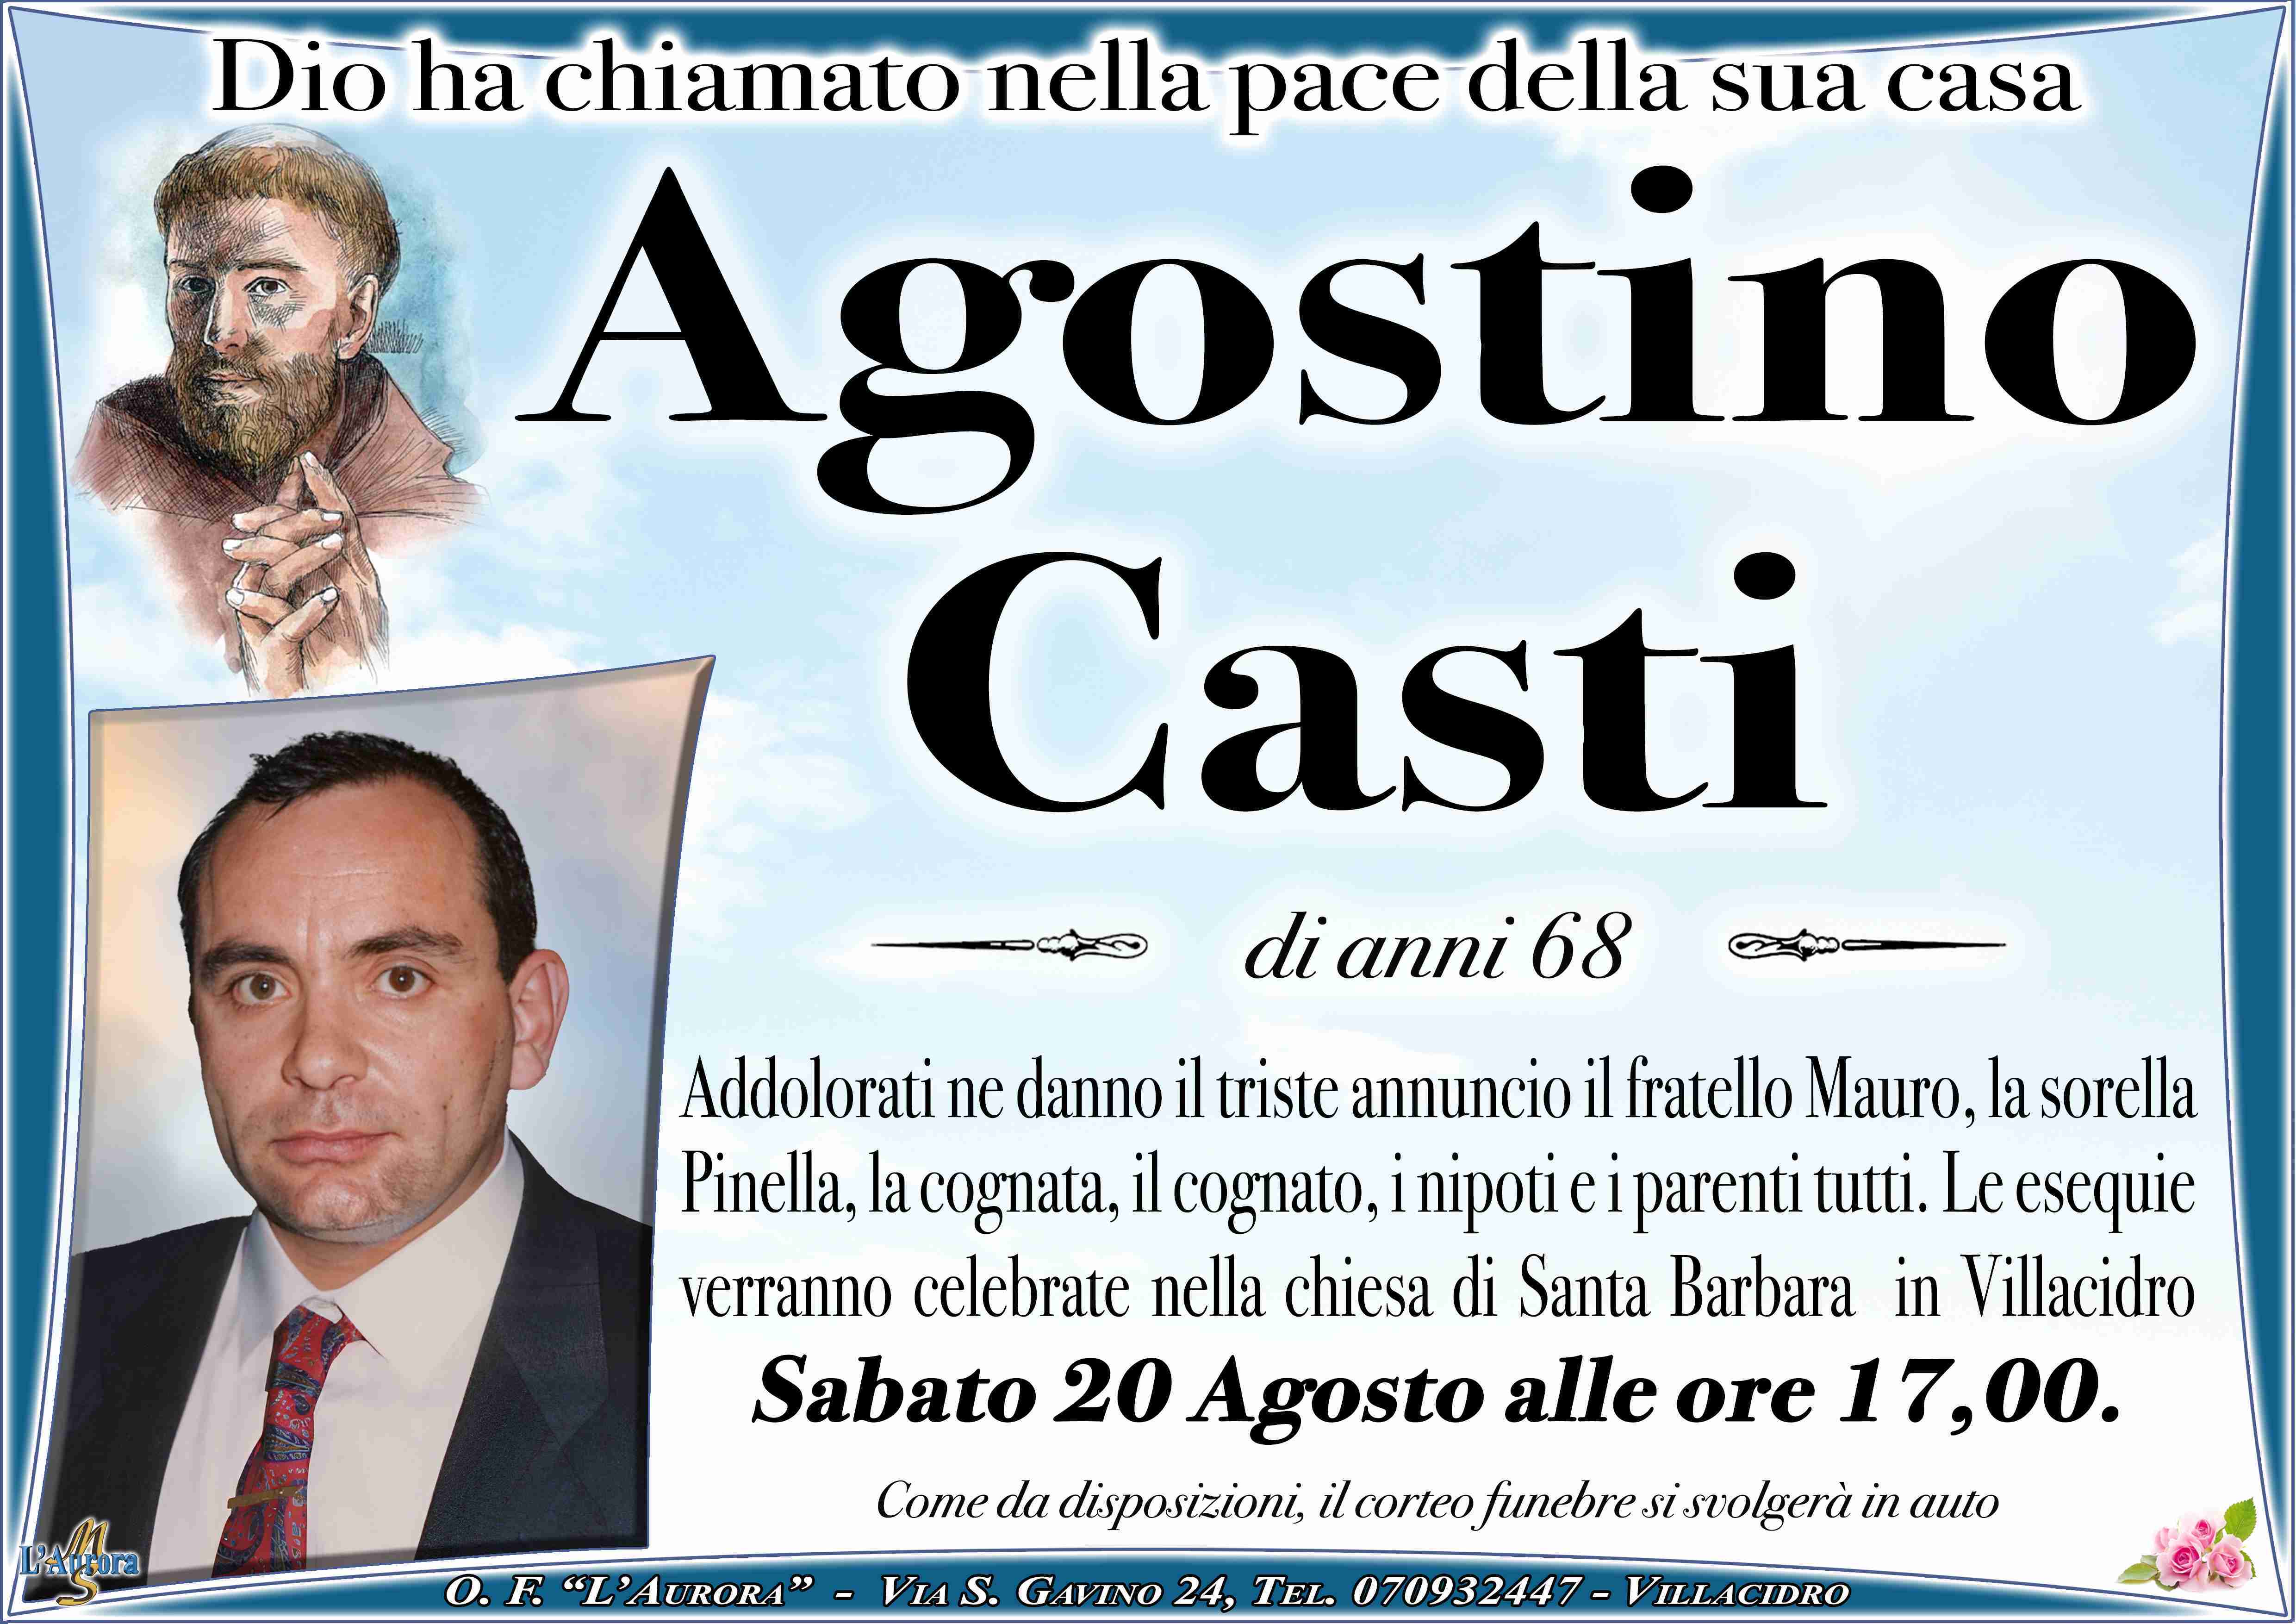 Agostino Casti